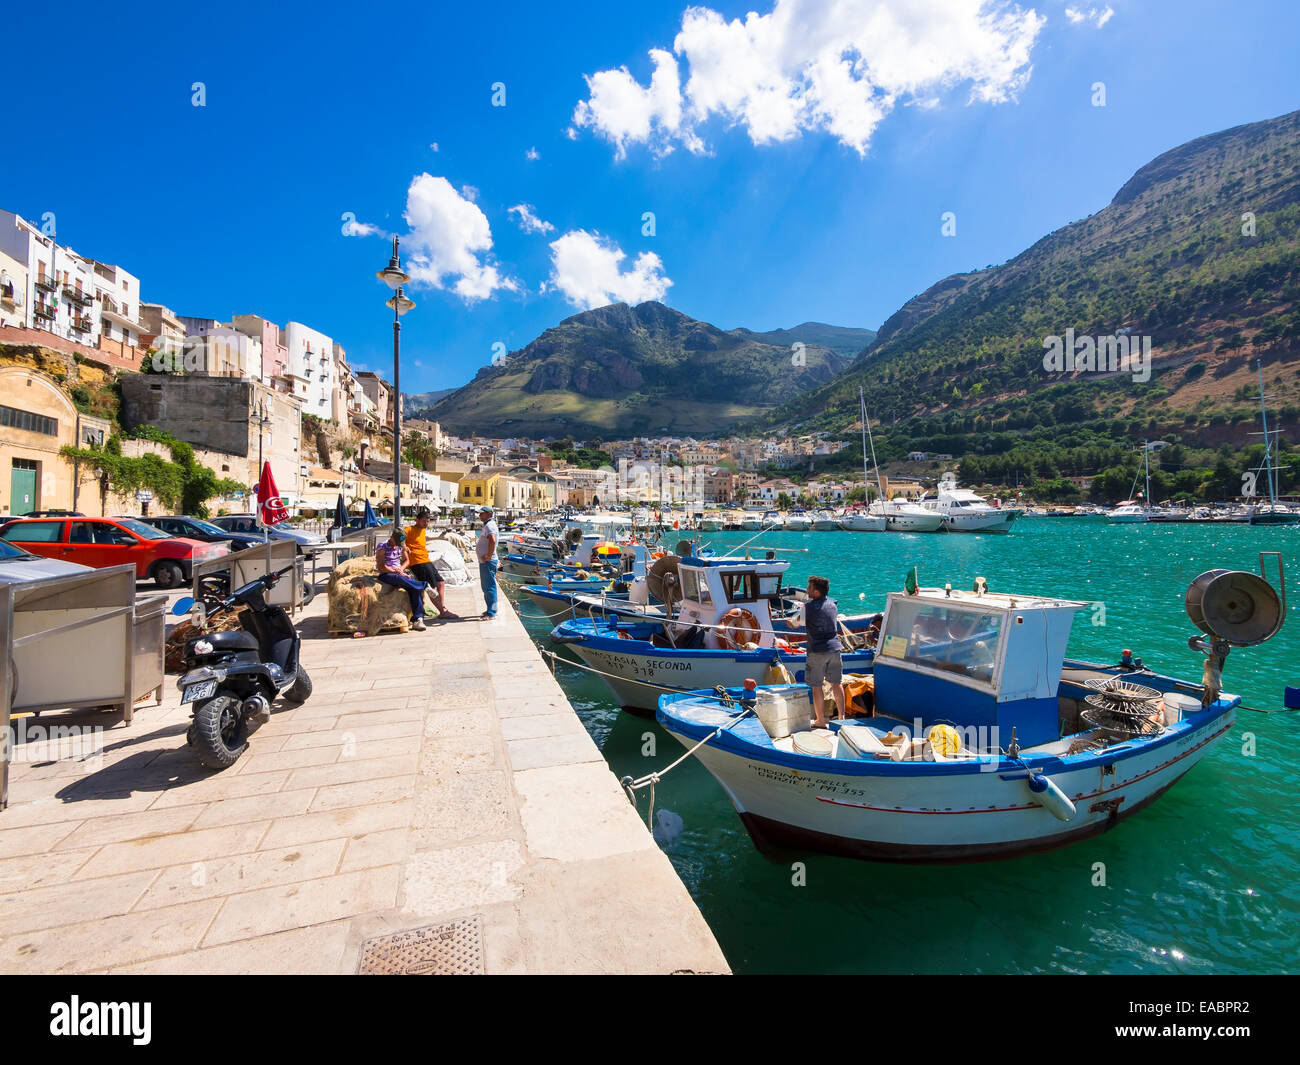 Italia Sicilia Provincia di Trapani villaggio di pescatori Castellammare  del Golfo Harbour waterfront promenade Foto stock - Alamy